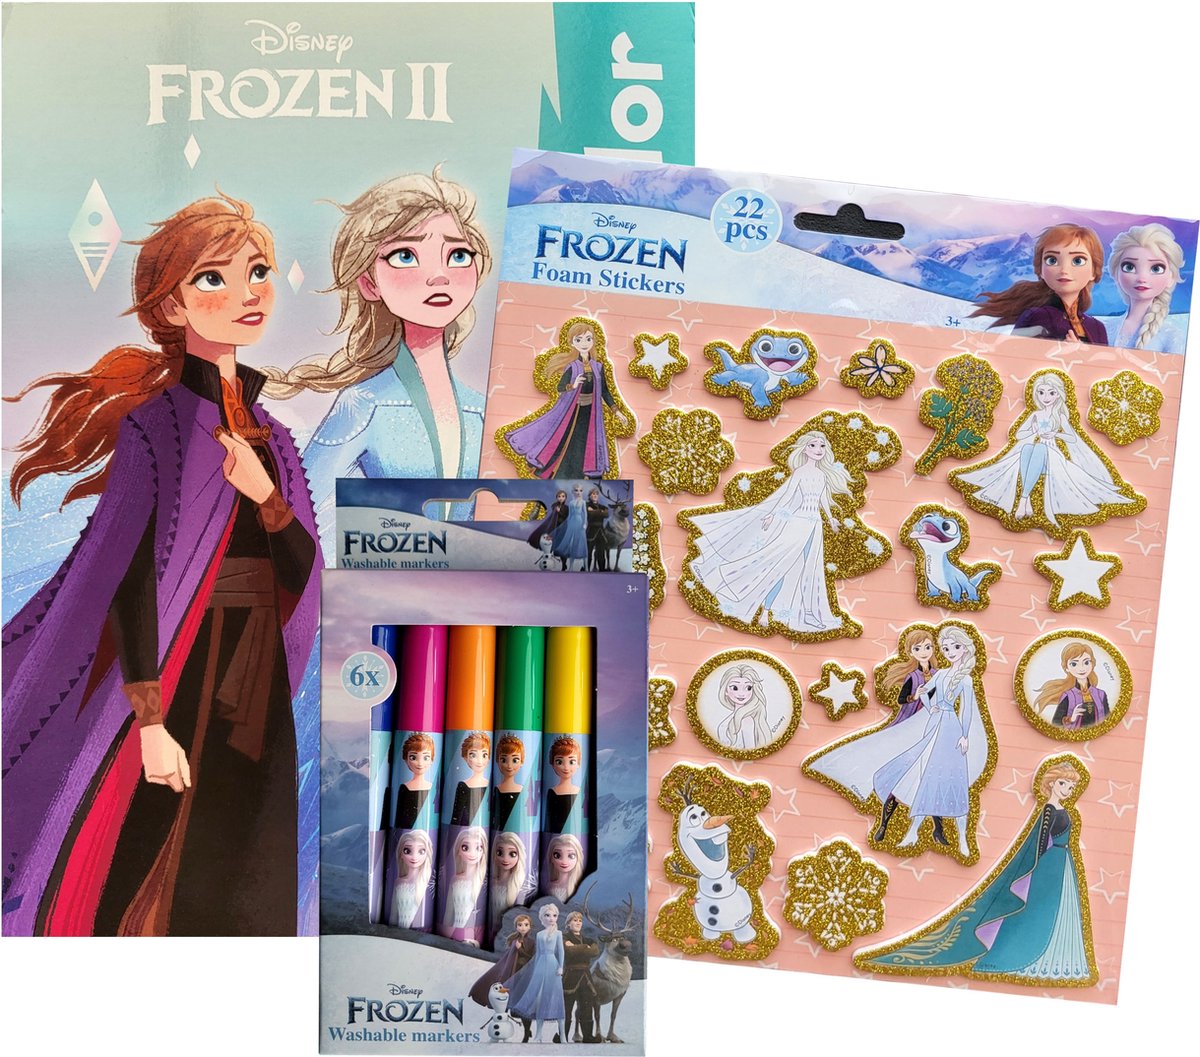 Disney Frozen - Kleurboek 32 pagina's waarvan 17 kleurplaten en 17 gekleurde illustraties - 22 foam stickers - 6 x uitwasbare stiften - Turqoise - kerst - sinterklaas - cadeau - kado